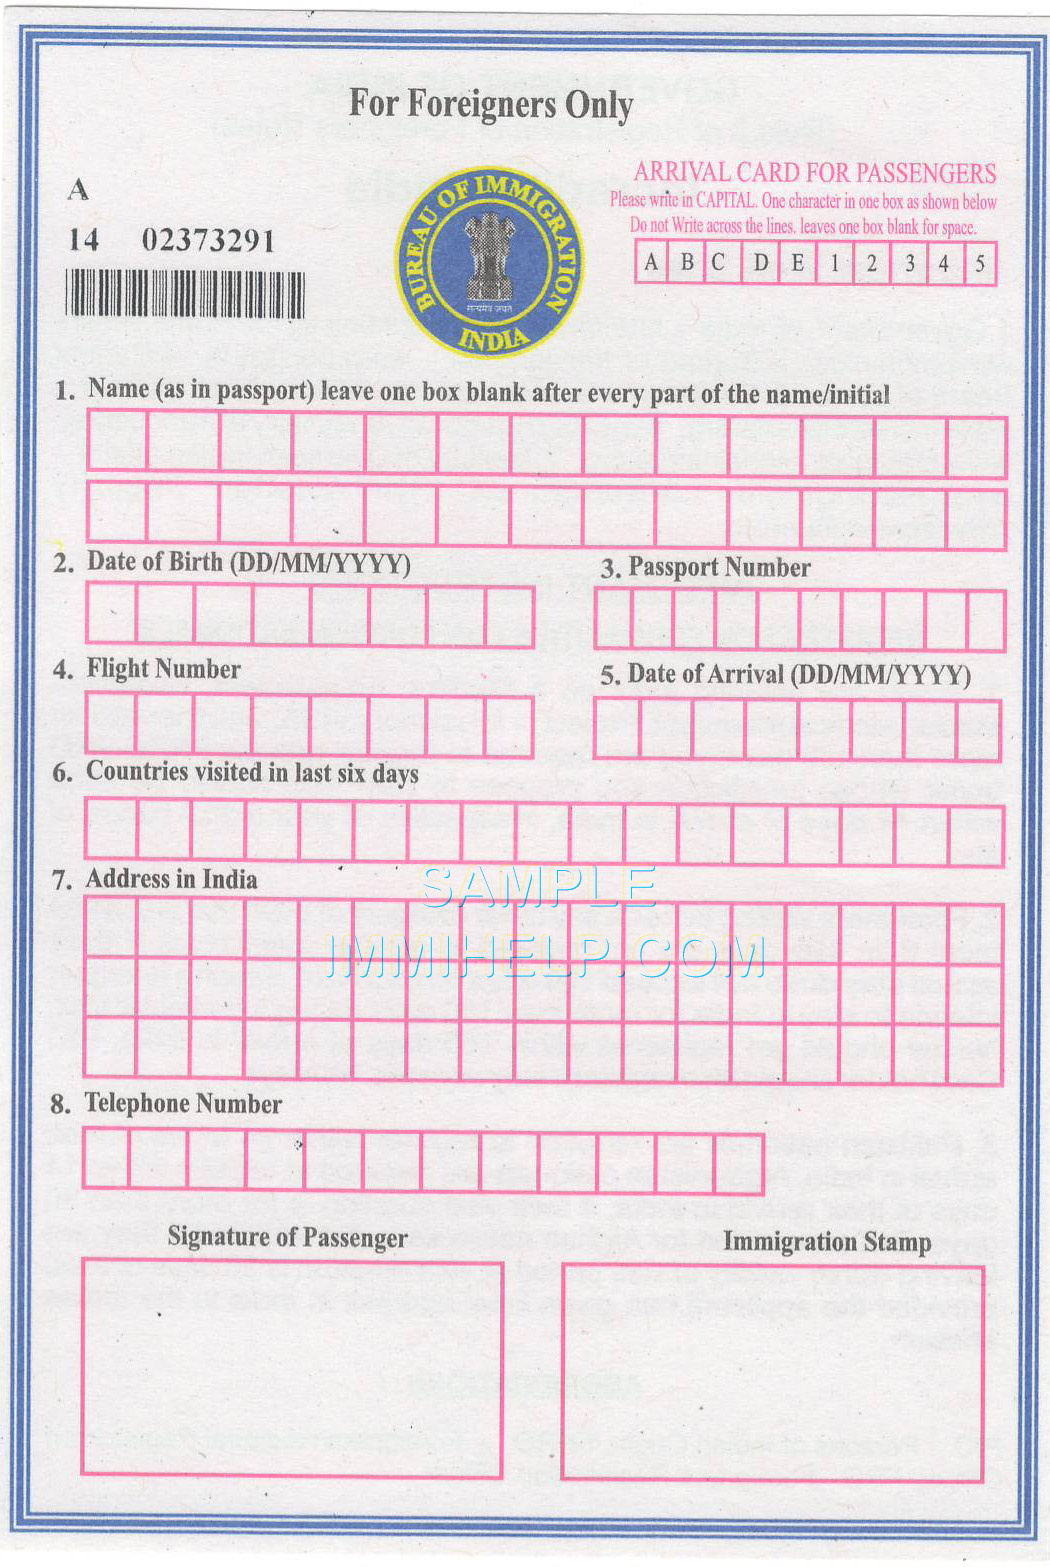 Indian visa application form pdf download